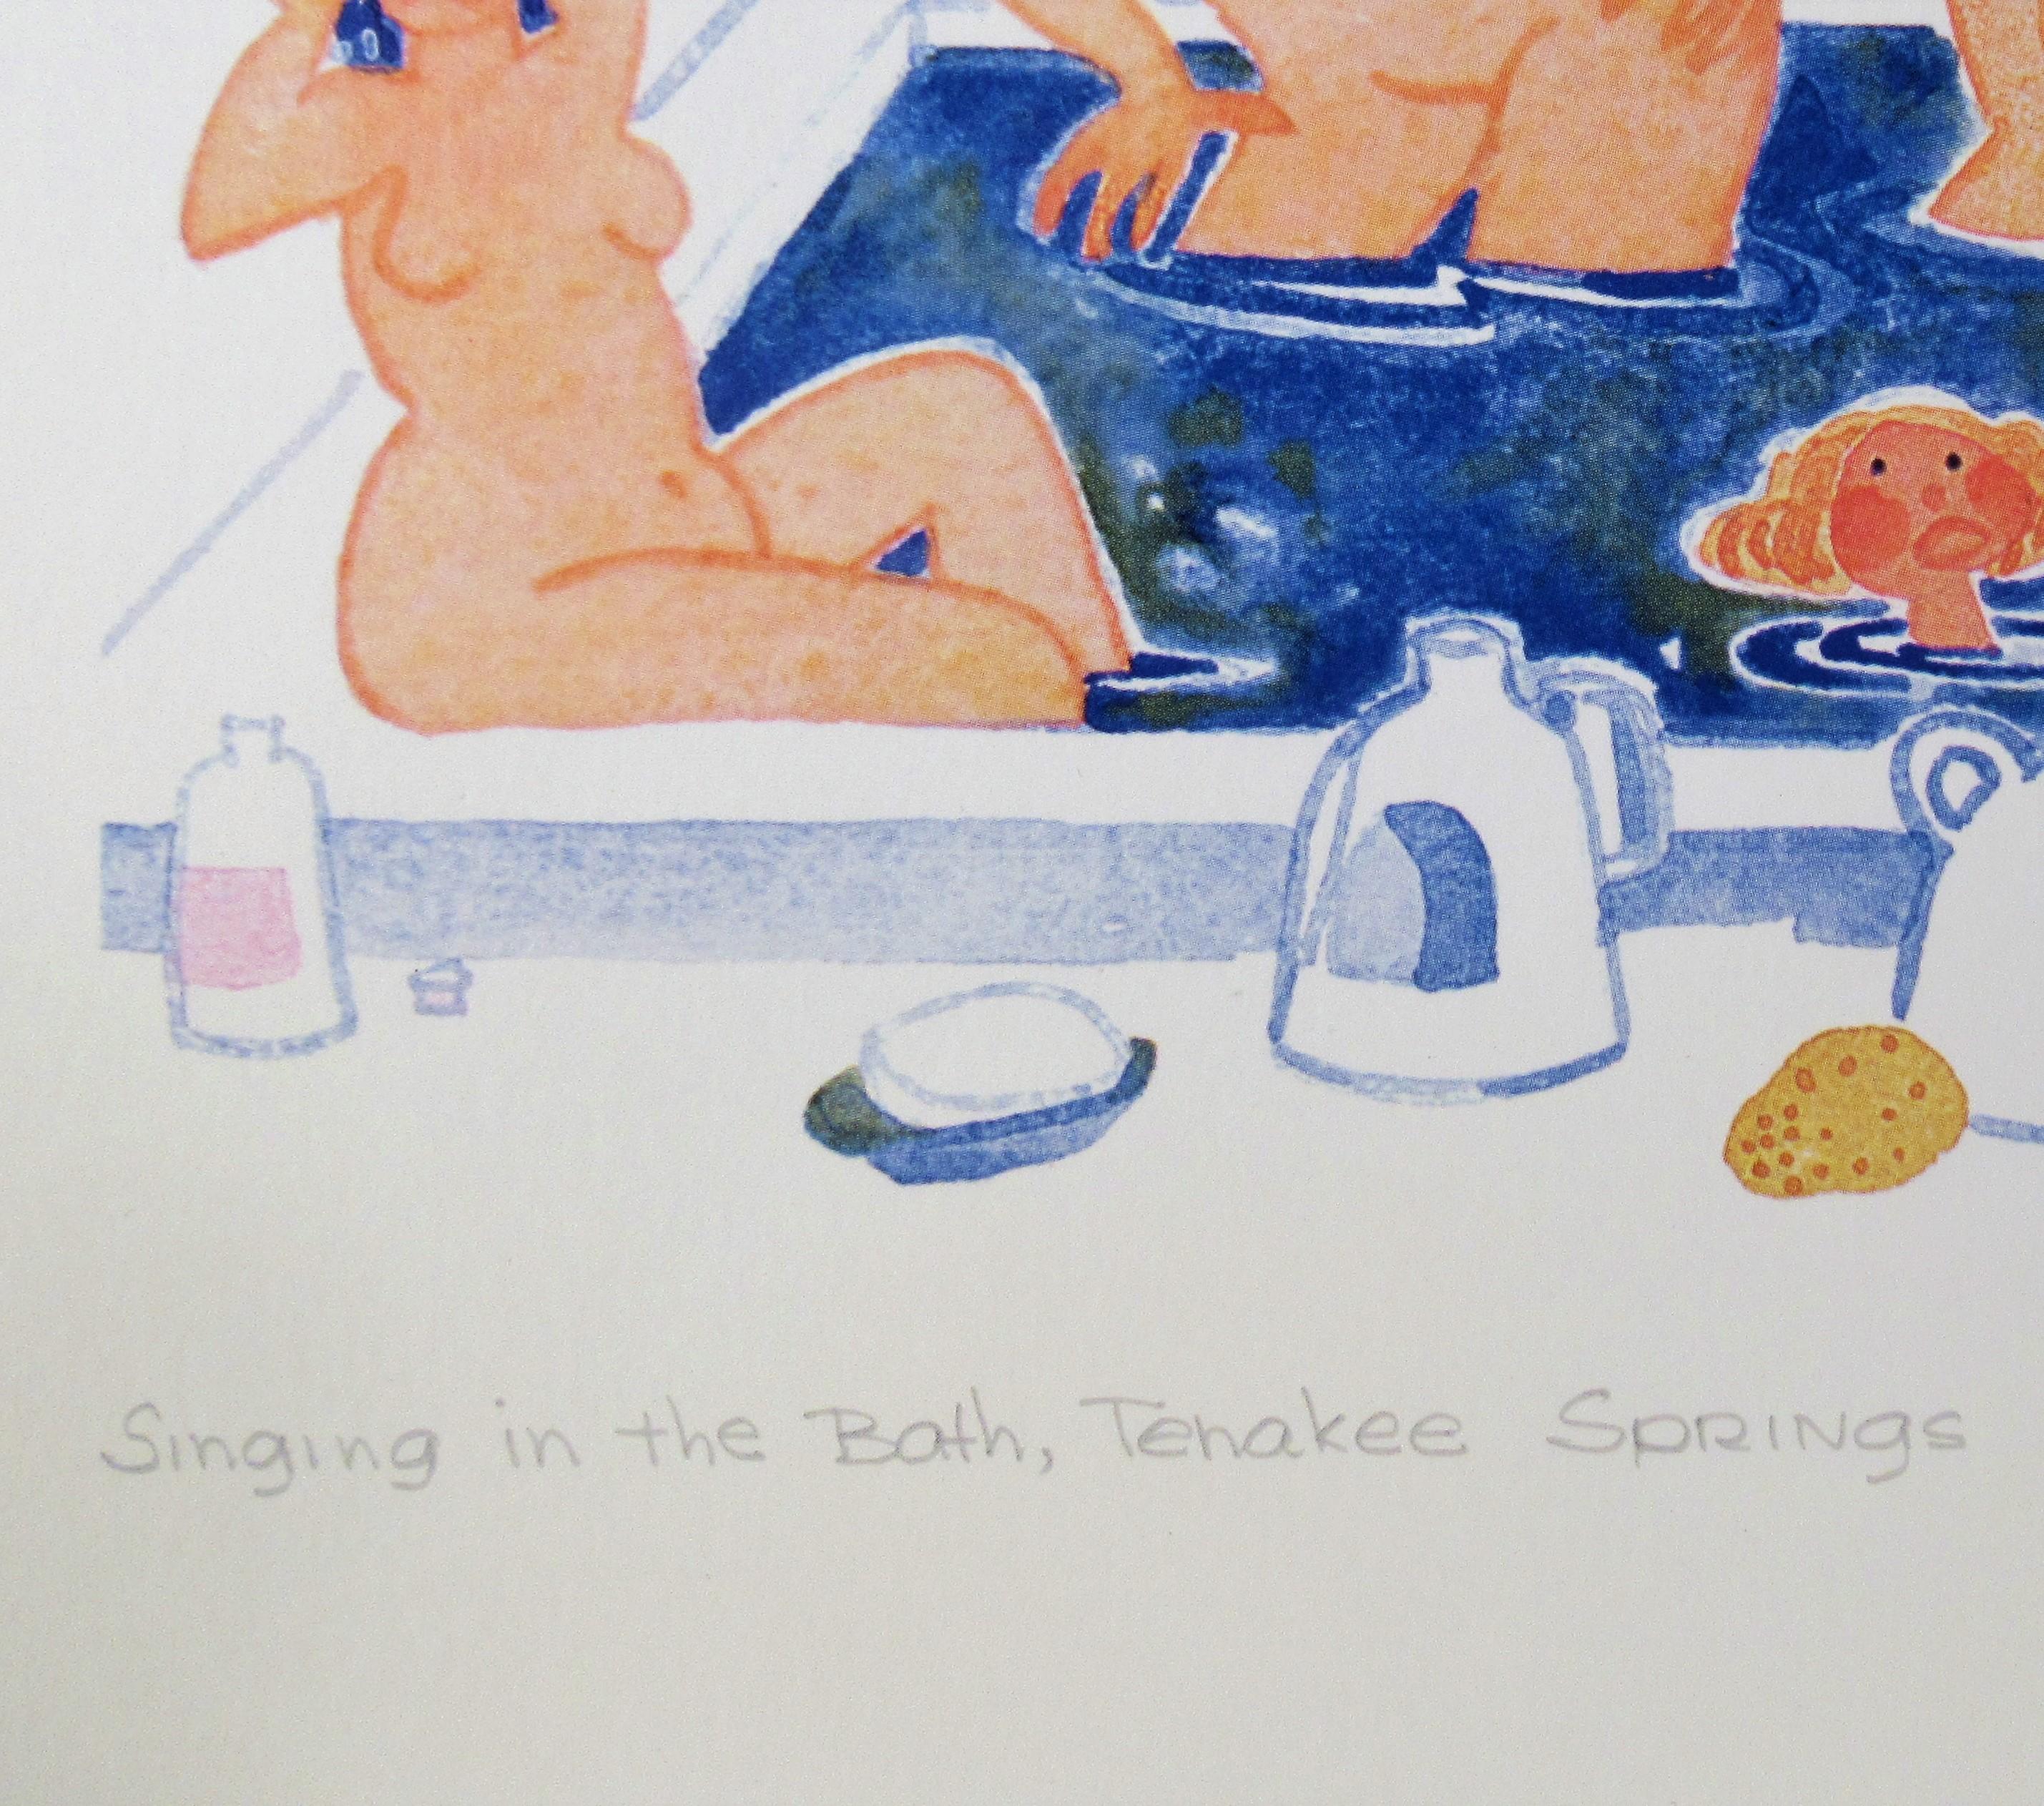 Singing in the Bath (lieding in the Bath), Tenakee Springs en vente 2